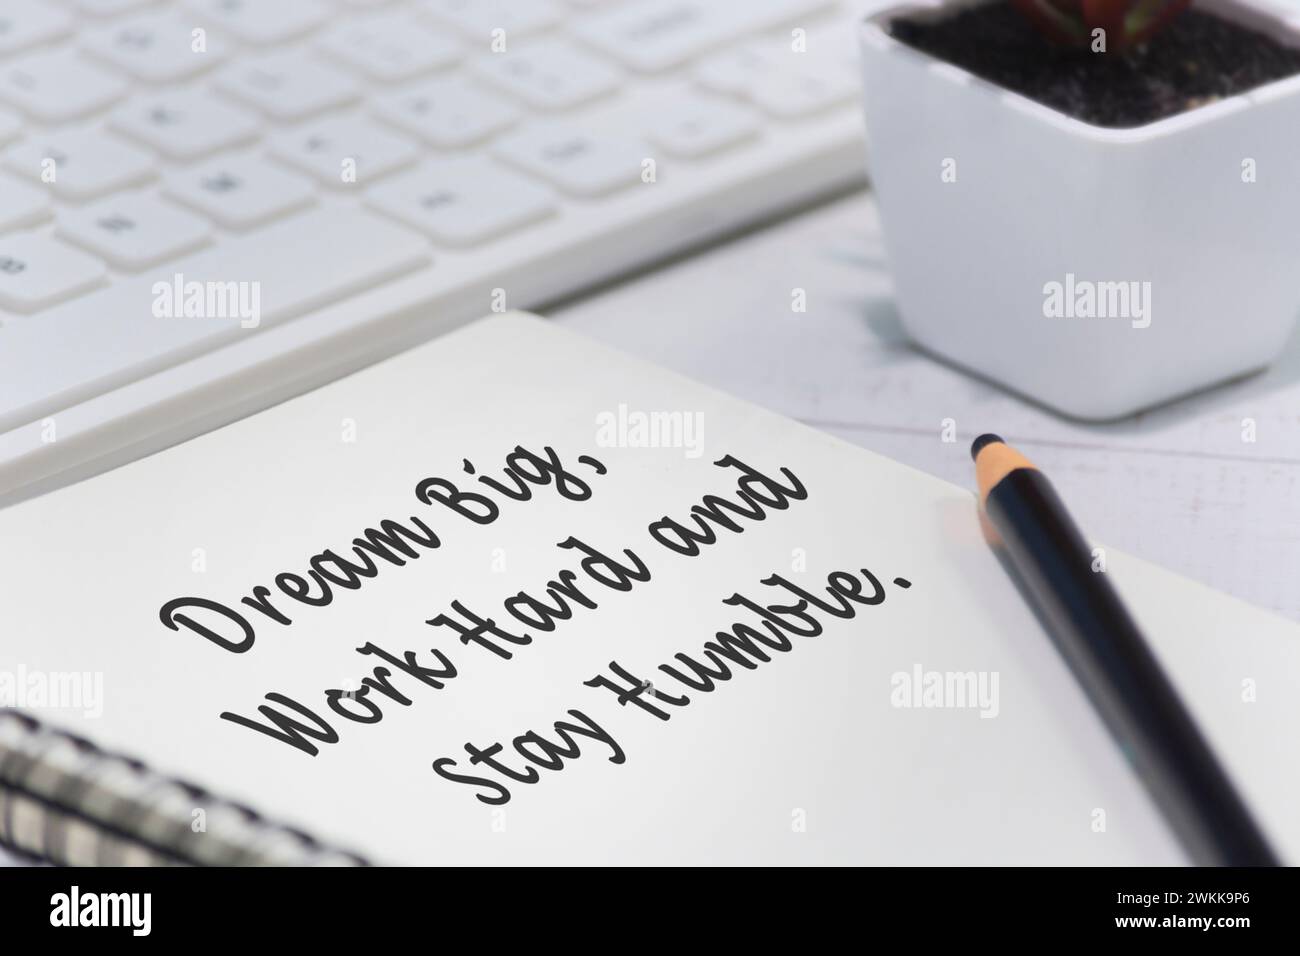 Motivierendes Zitat auf Notizblock – Träume groß, arbeiten hart und bleiben demütig. Stockfoto